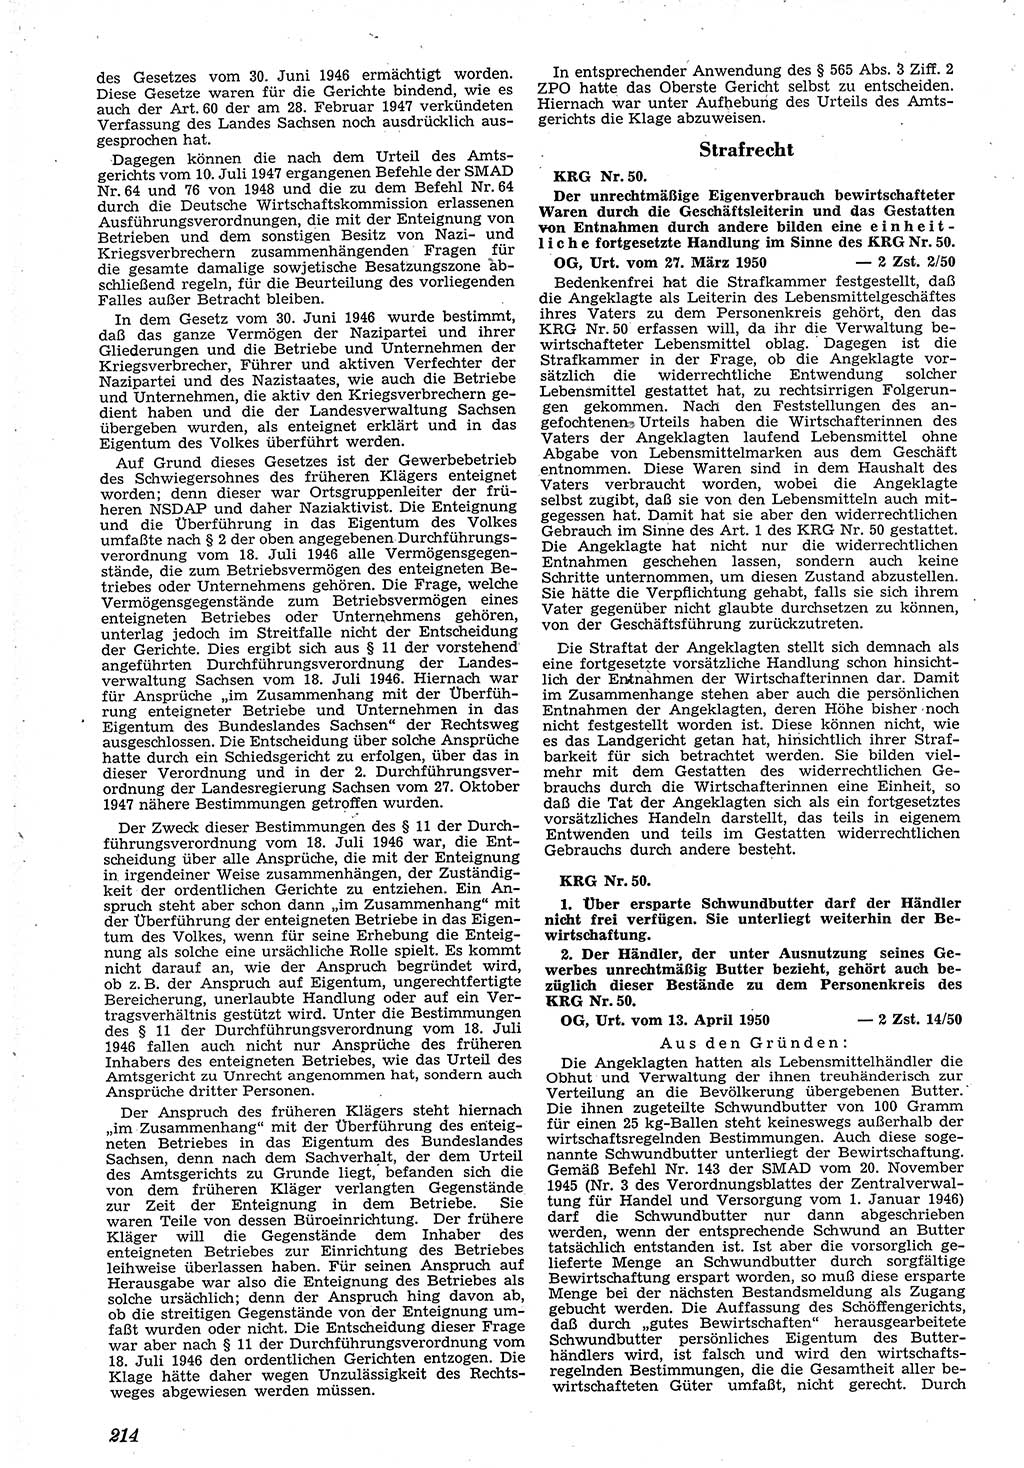 Neue Justiz (NJ), Zeitschrift für Recht und Rechtswissenschaft [Deutsche Demokratische Republik (DDR)], 4. Jahrgang 1950, Seite 214 (NJ DDR 1950, S. 214)